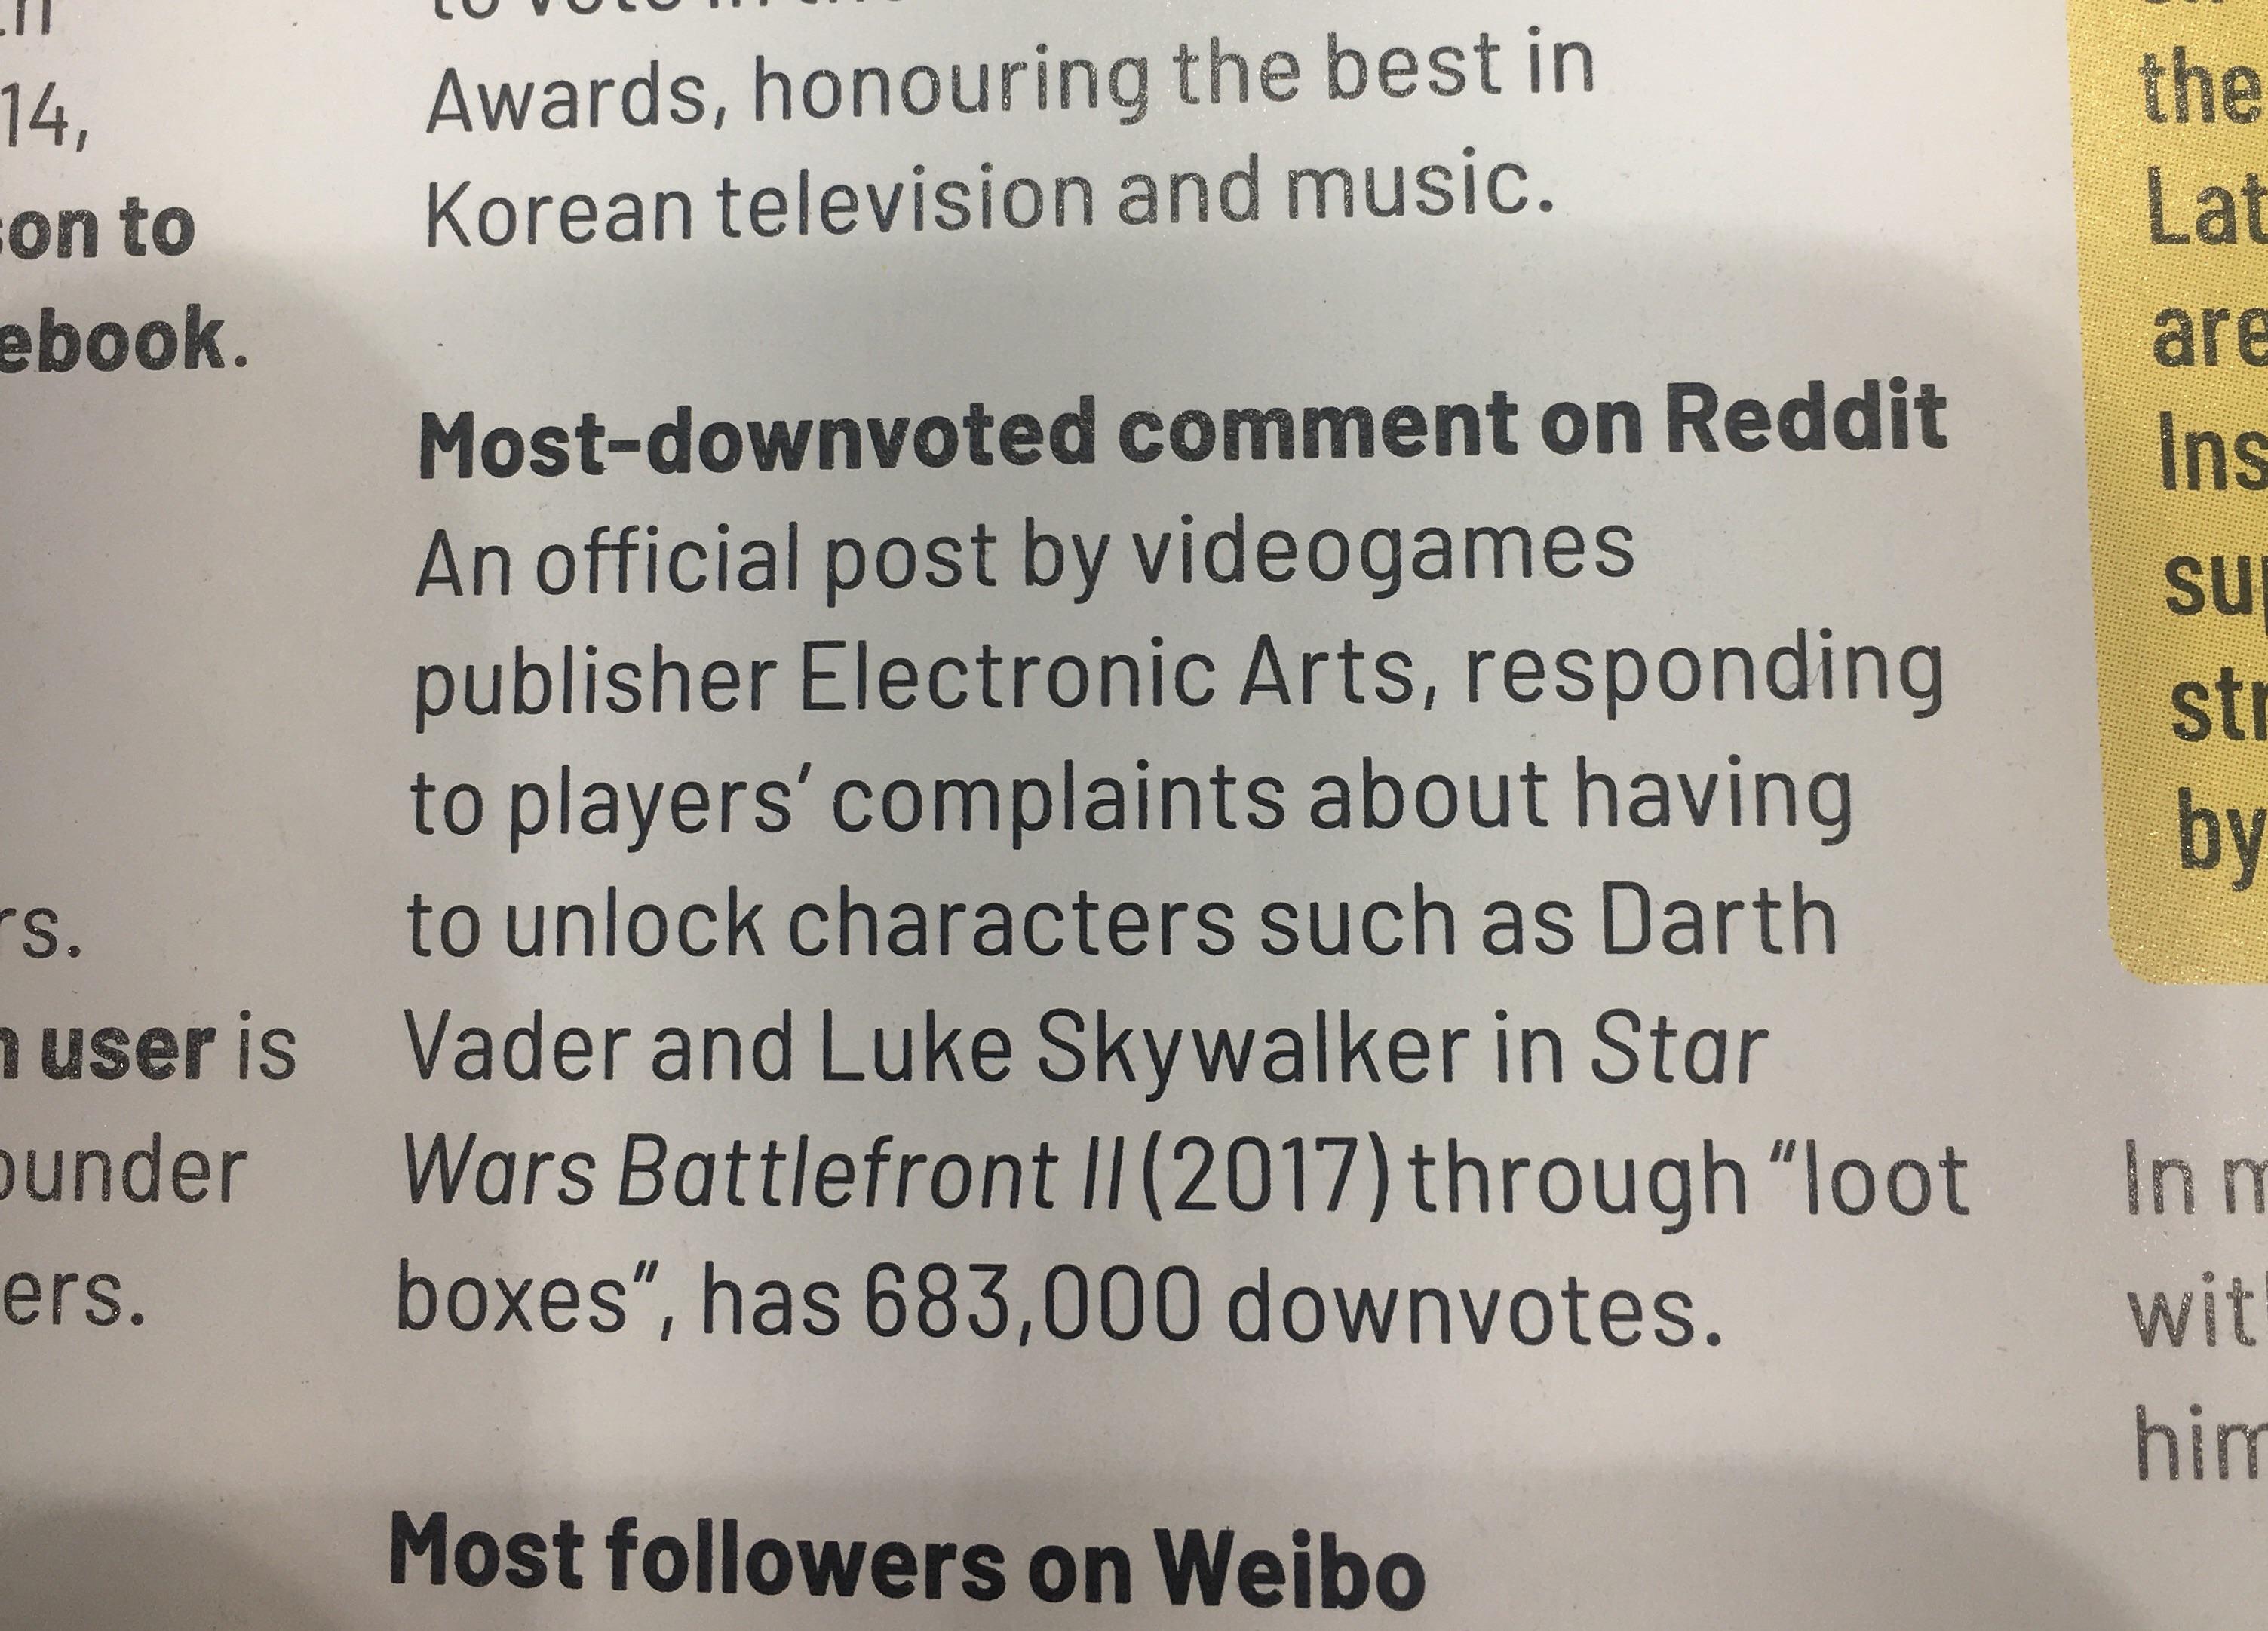 EAの公式回答がギネス世界記録「もっともフォーラムで低評価を受けたコメント」に認定、『Star Wars Battlefront II』ルートボックス騒動に対する返答で_001